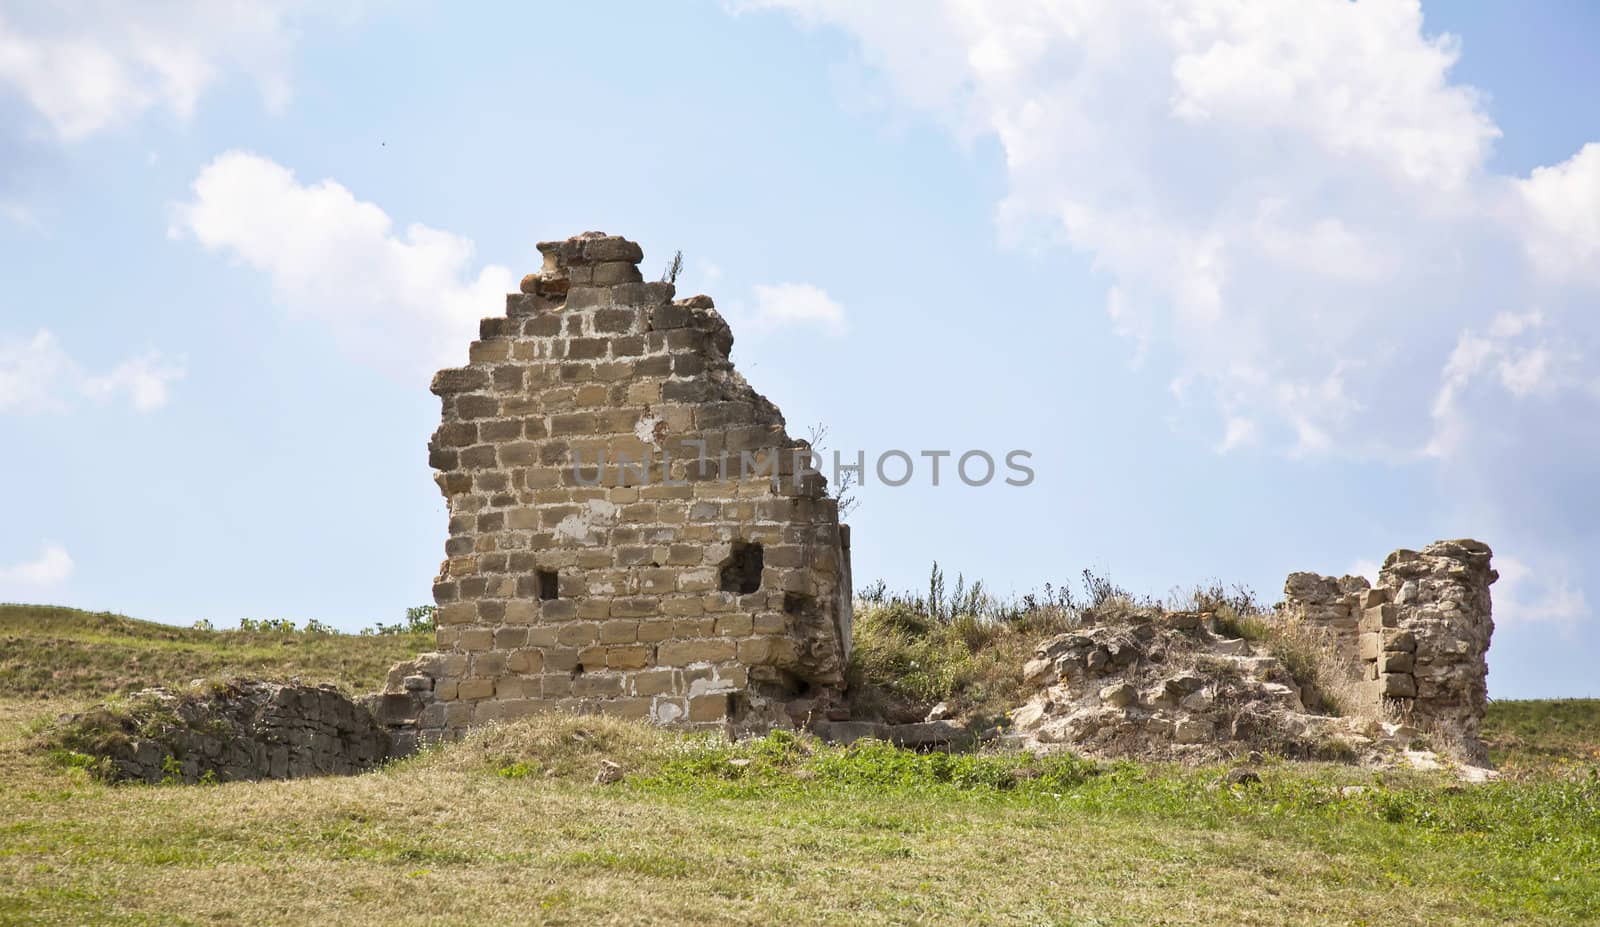 Hotin castle with ruins in summer in ukraine